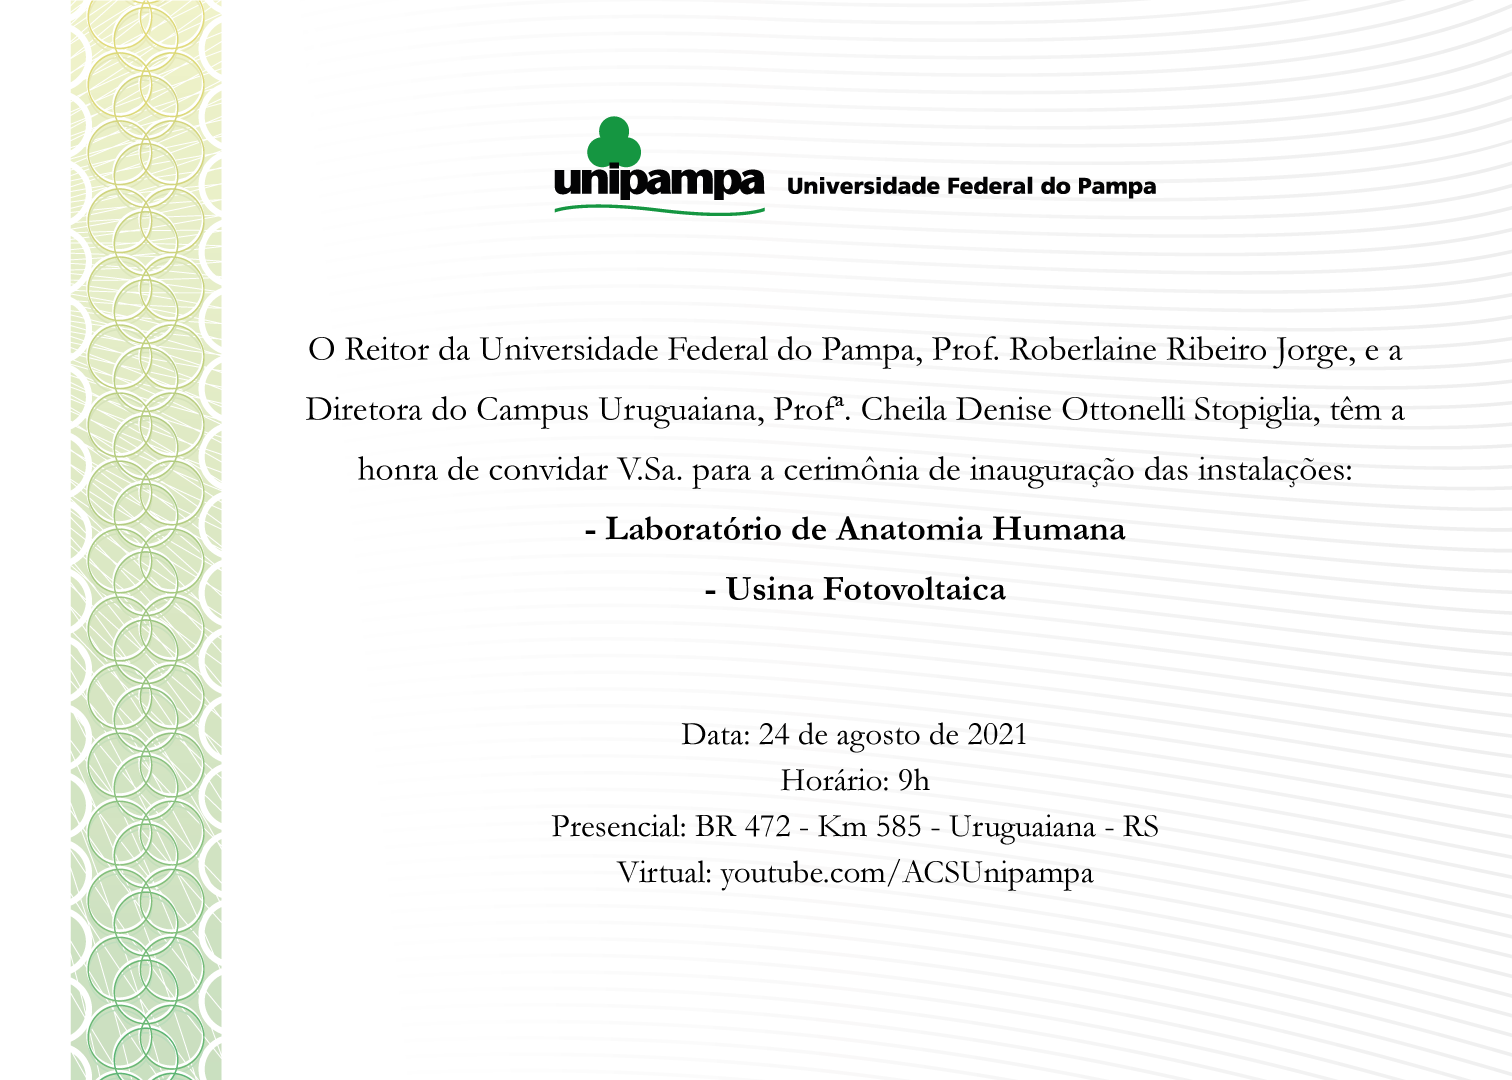 Convite para inauguração de Laboratório de Anatomia Humana e Usina Fotovoltaica do Campus Uruguaiana - Divulgação